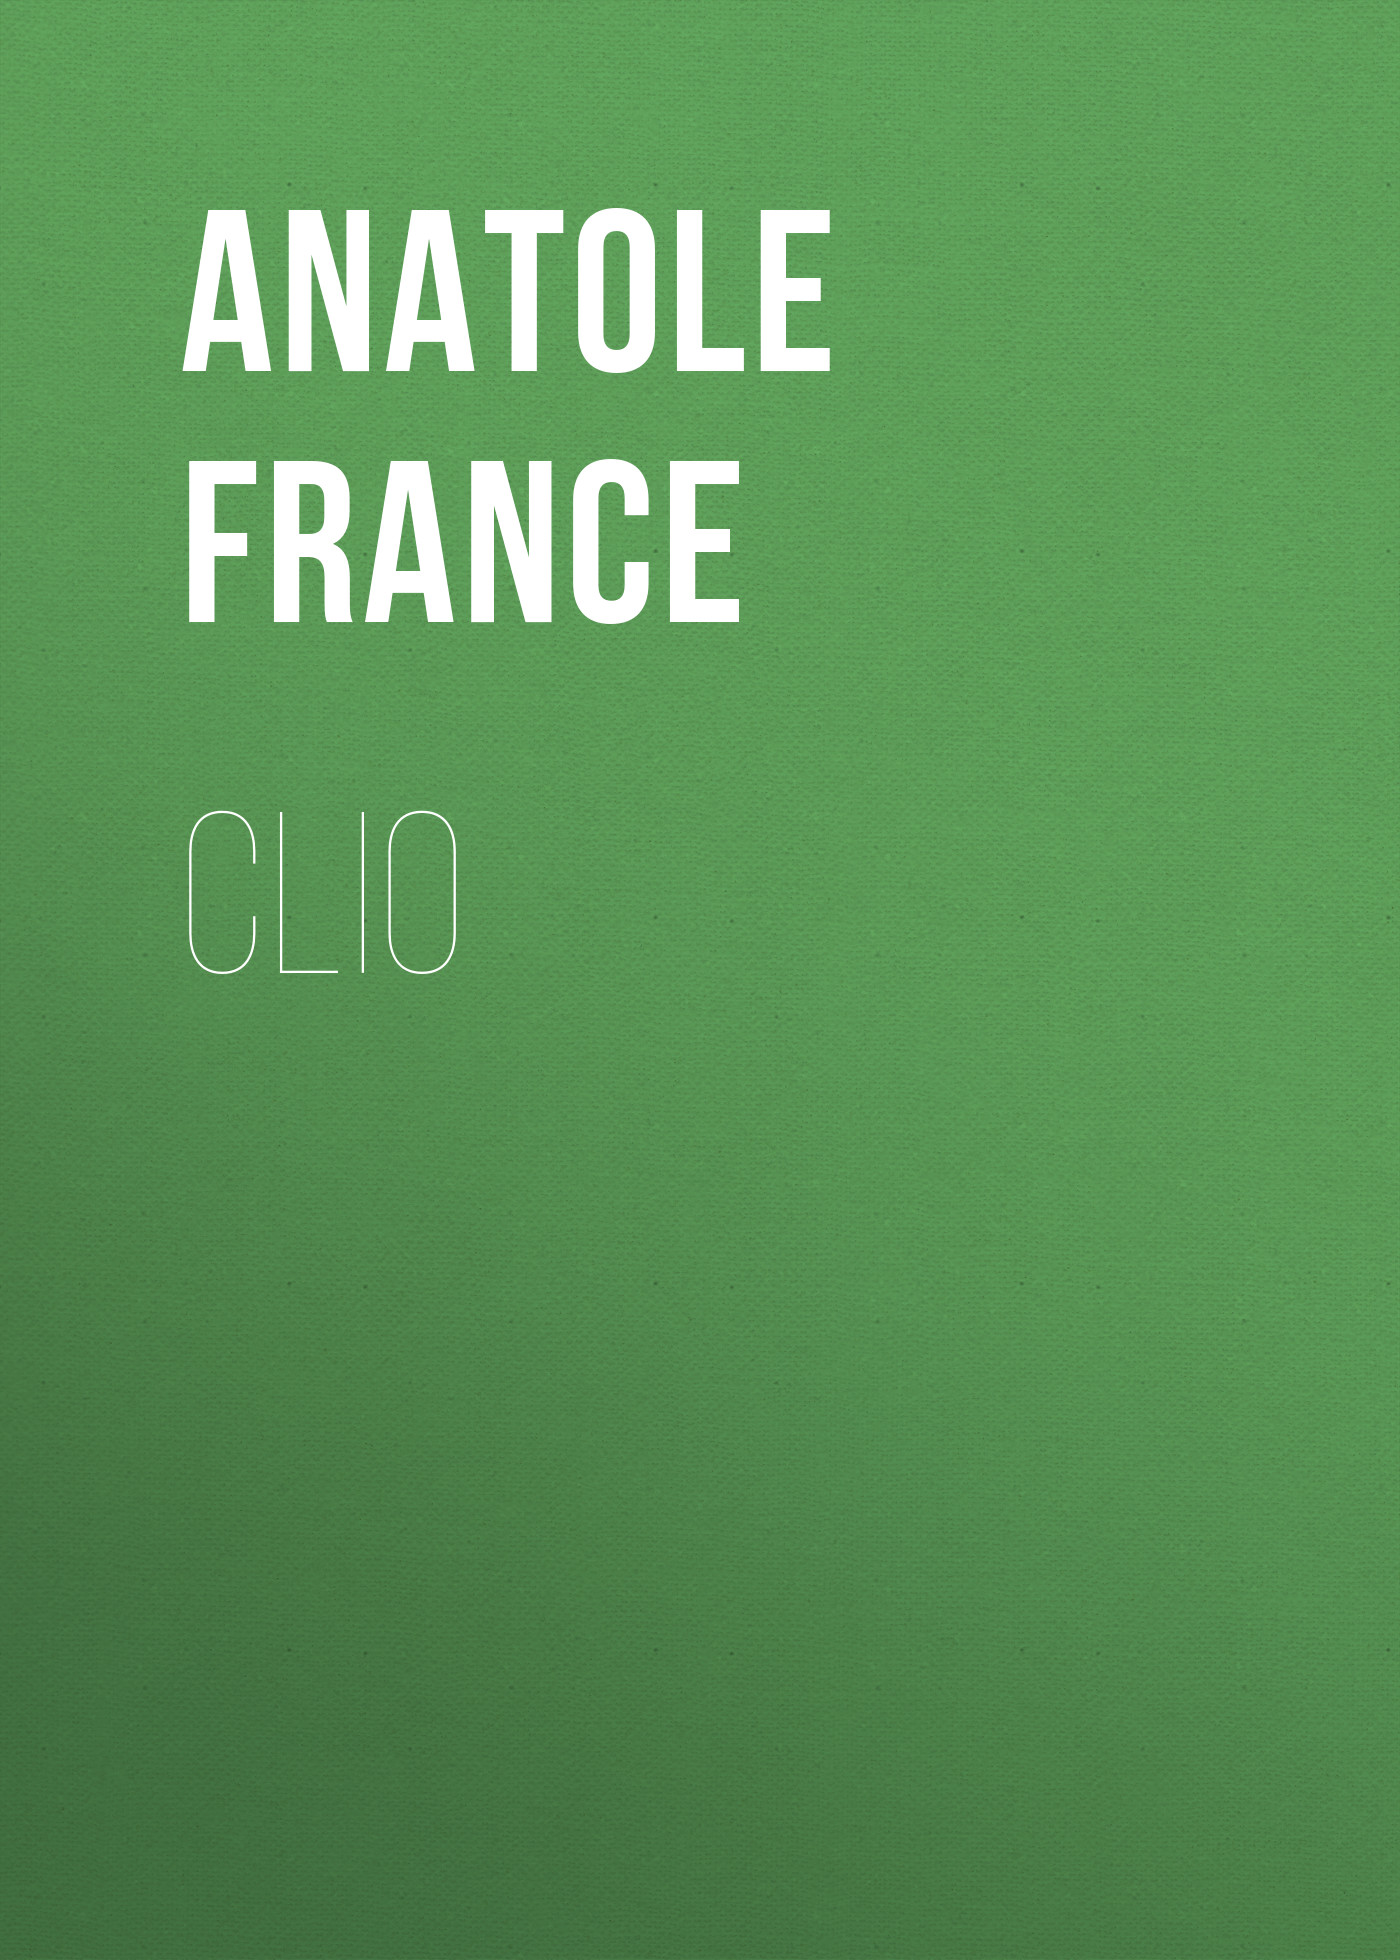 Книга Clio из серии , созданная Anatole France, может относится к жанру Зарубежная старинная литература, Зарубежная классика. Стоимость электронной книги Clio с идентификатором 24728105 составляет 0 руб.